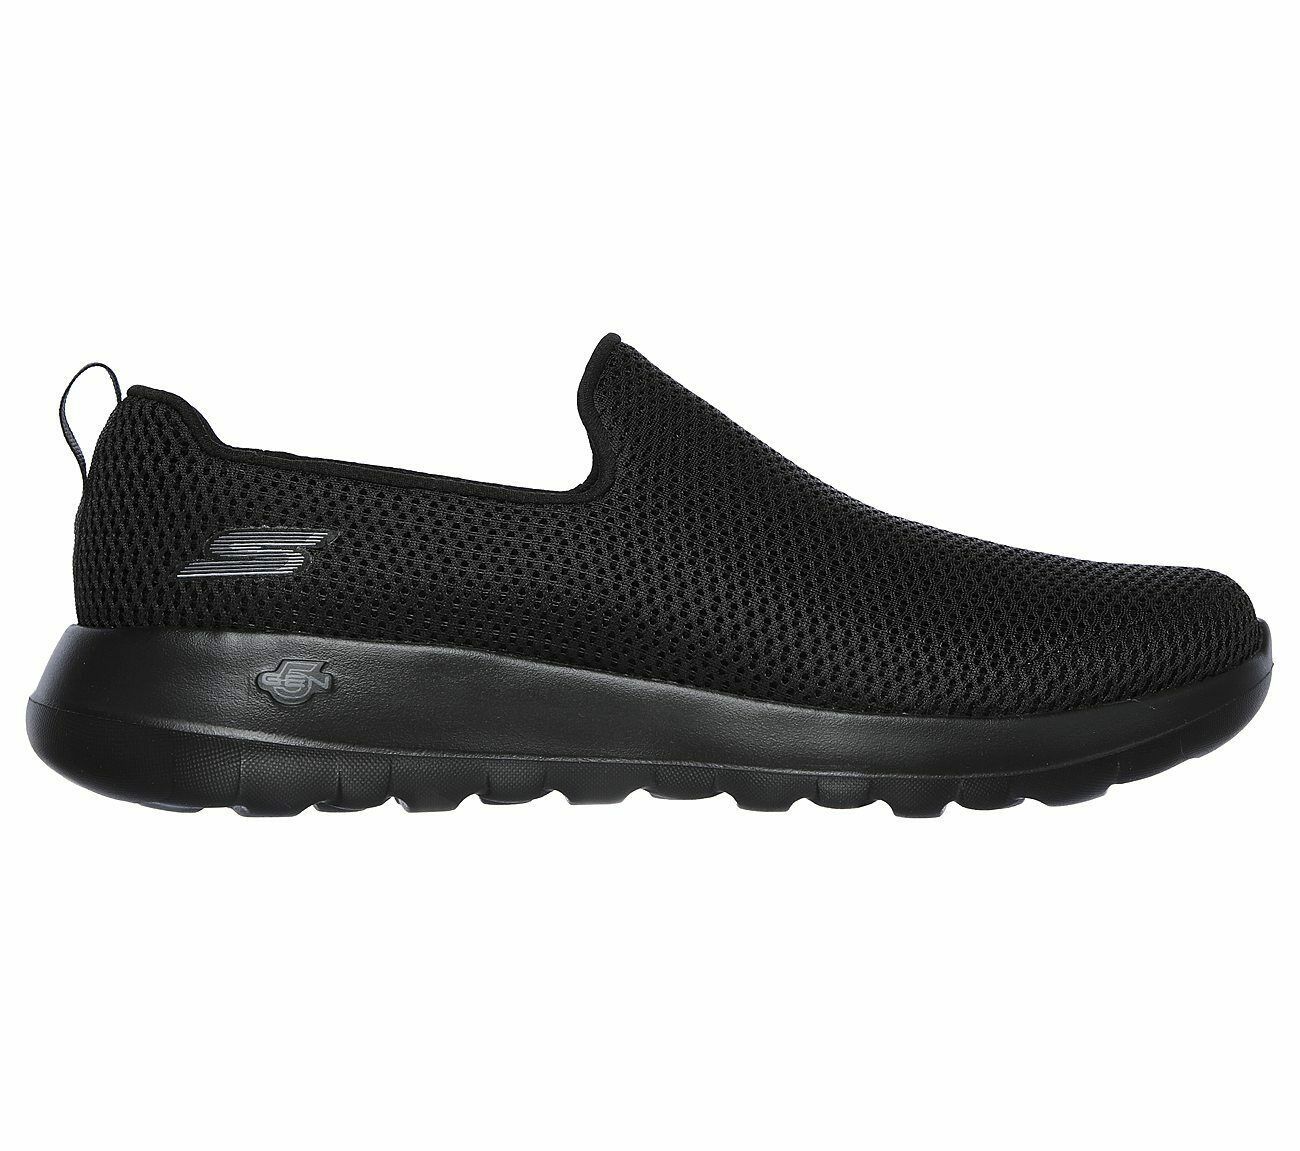 Skechers Shoe Men Black Extra Wide Fit Comfort Casual Slipon Go Walk ...